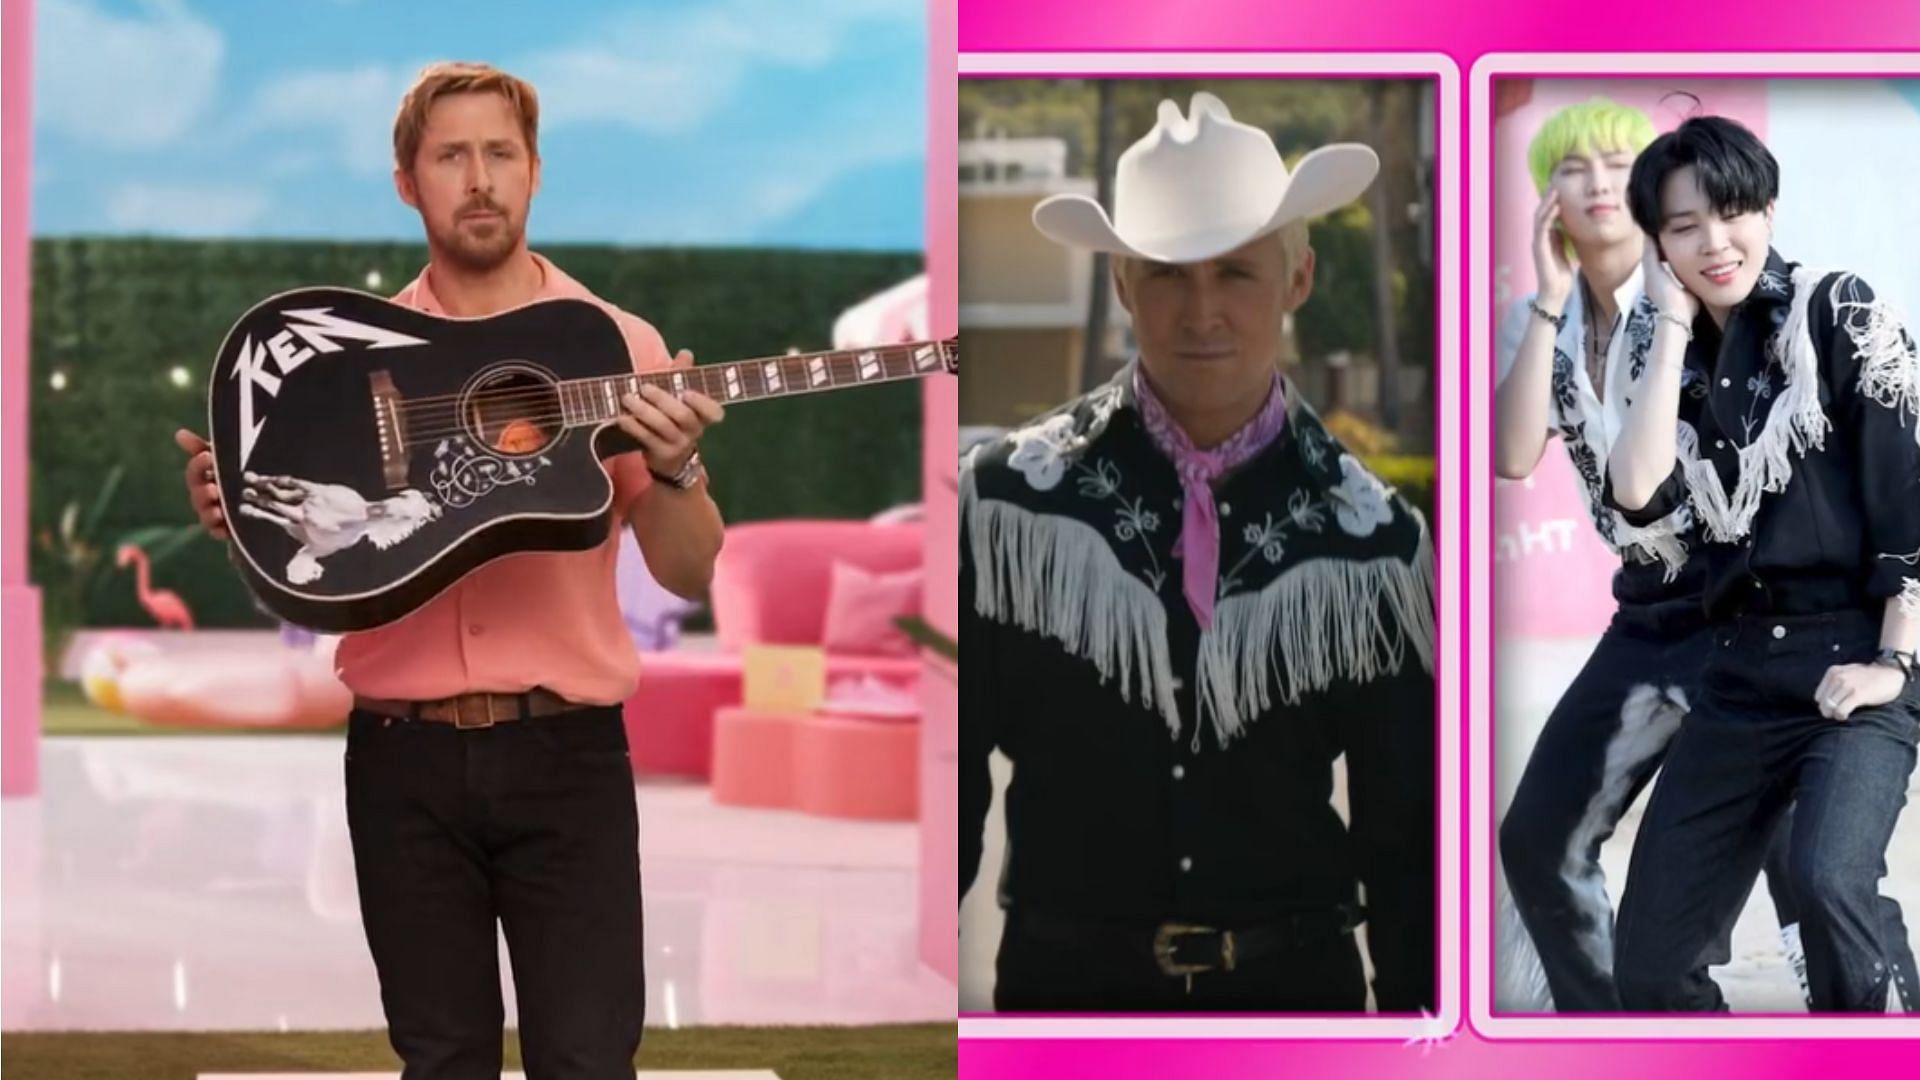 Ryan Gosling, star of Barbie, sends BTS